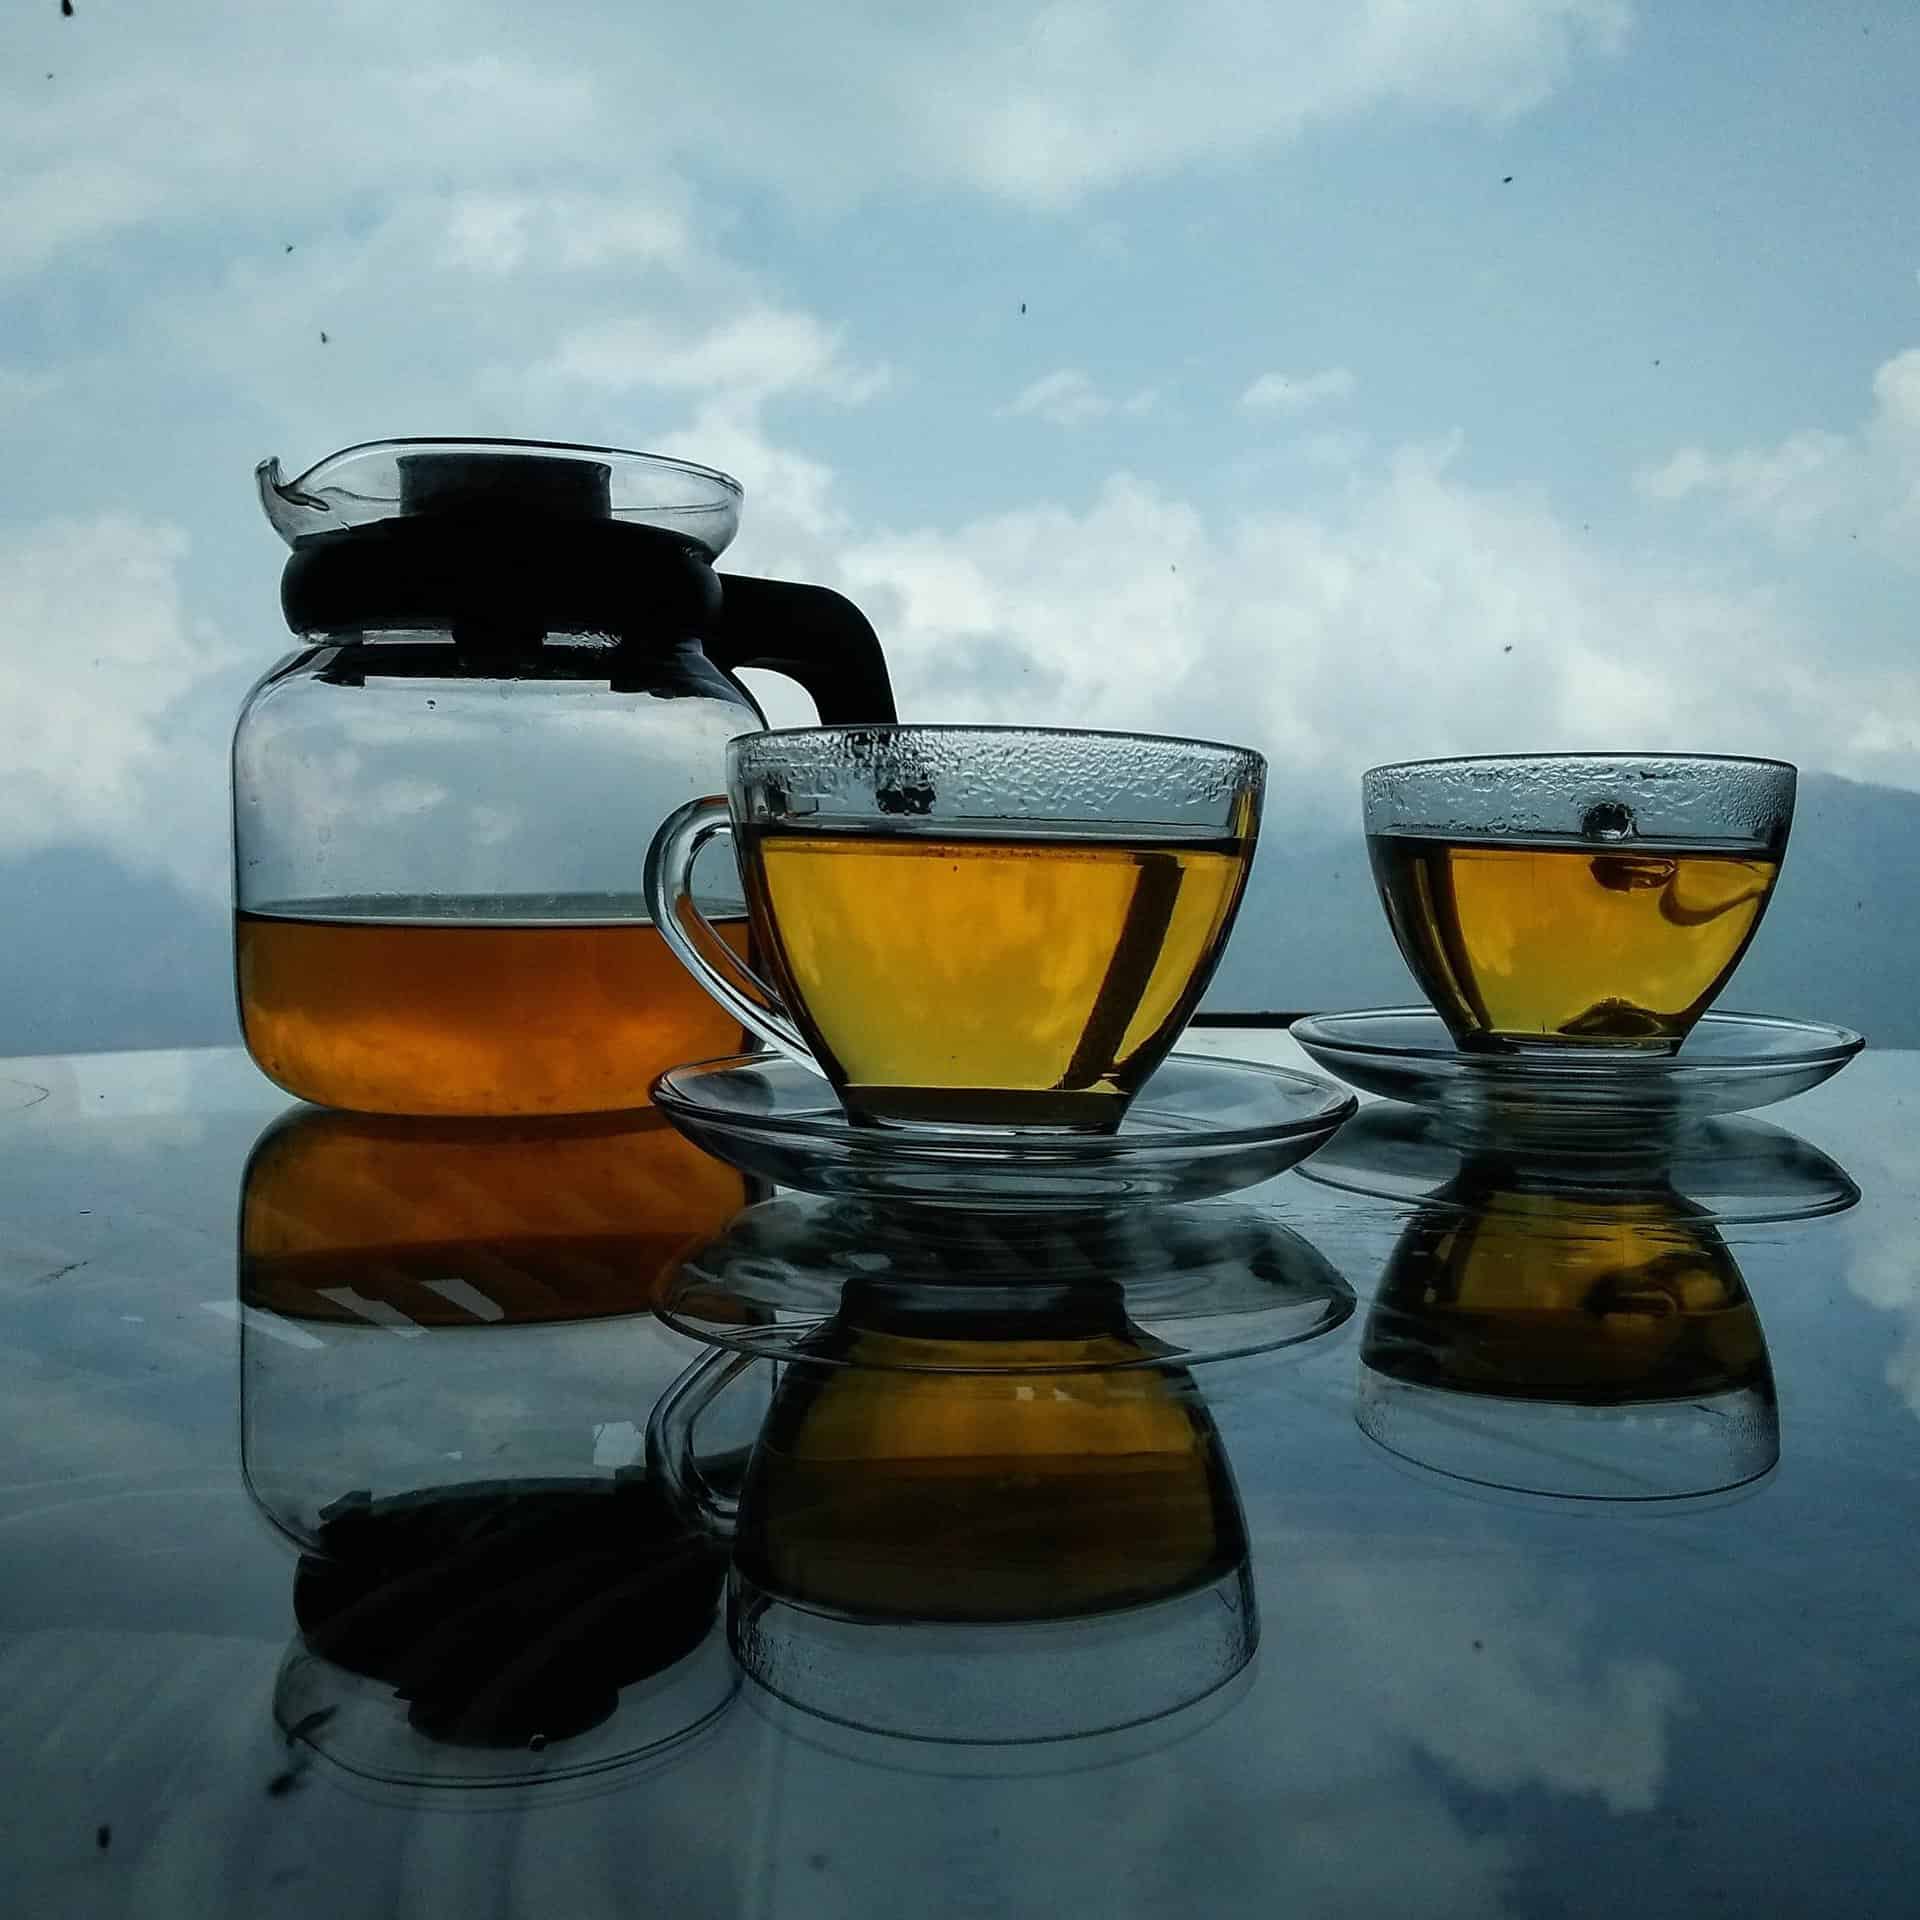 Tea with Himalaya view 